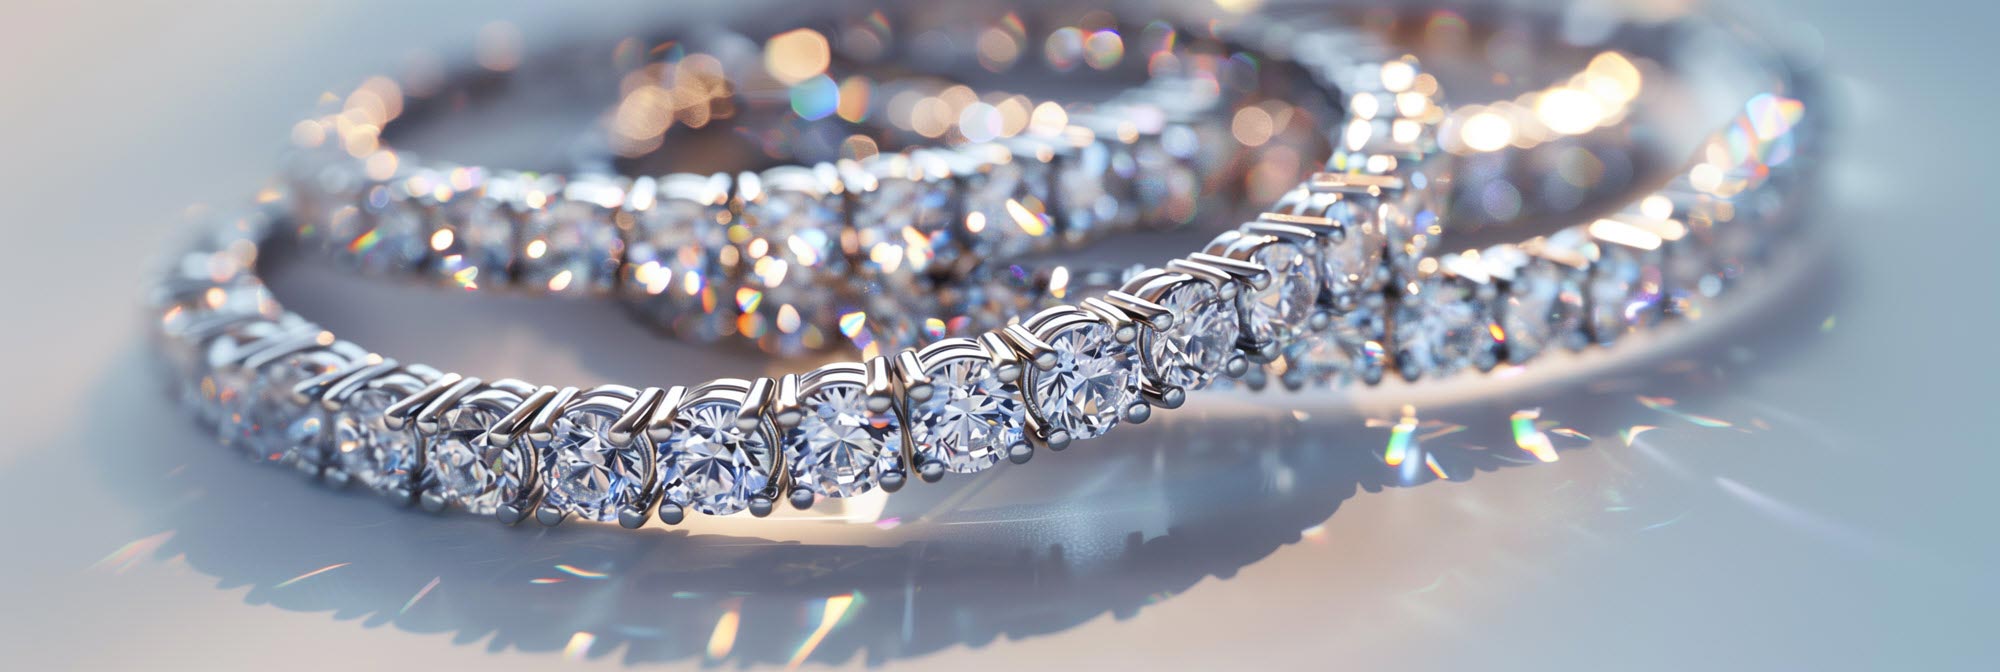 Dyati Diamond Tennis Bracelet for women under 65K - Candere by Kalyan  Jewellers